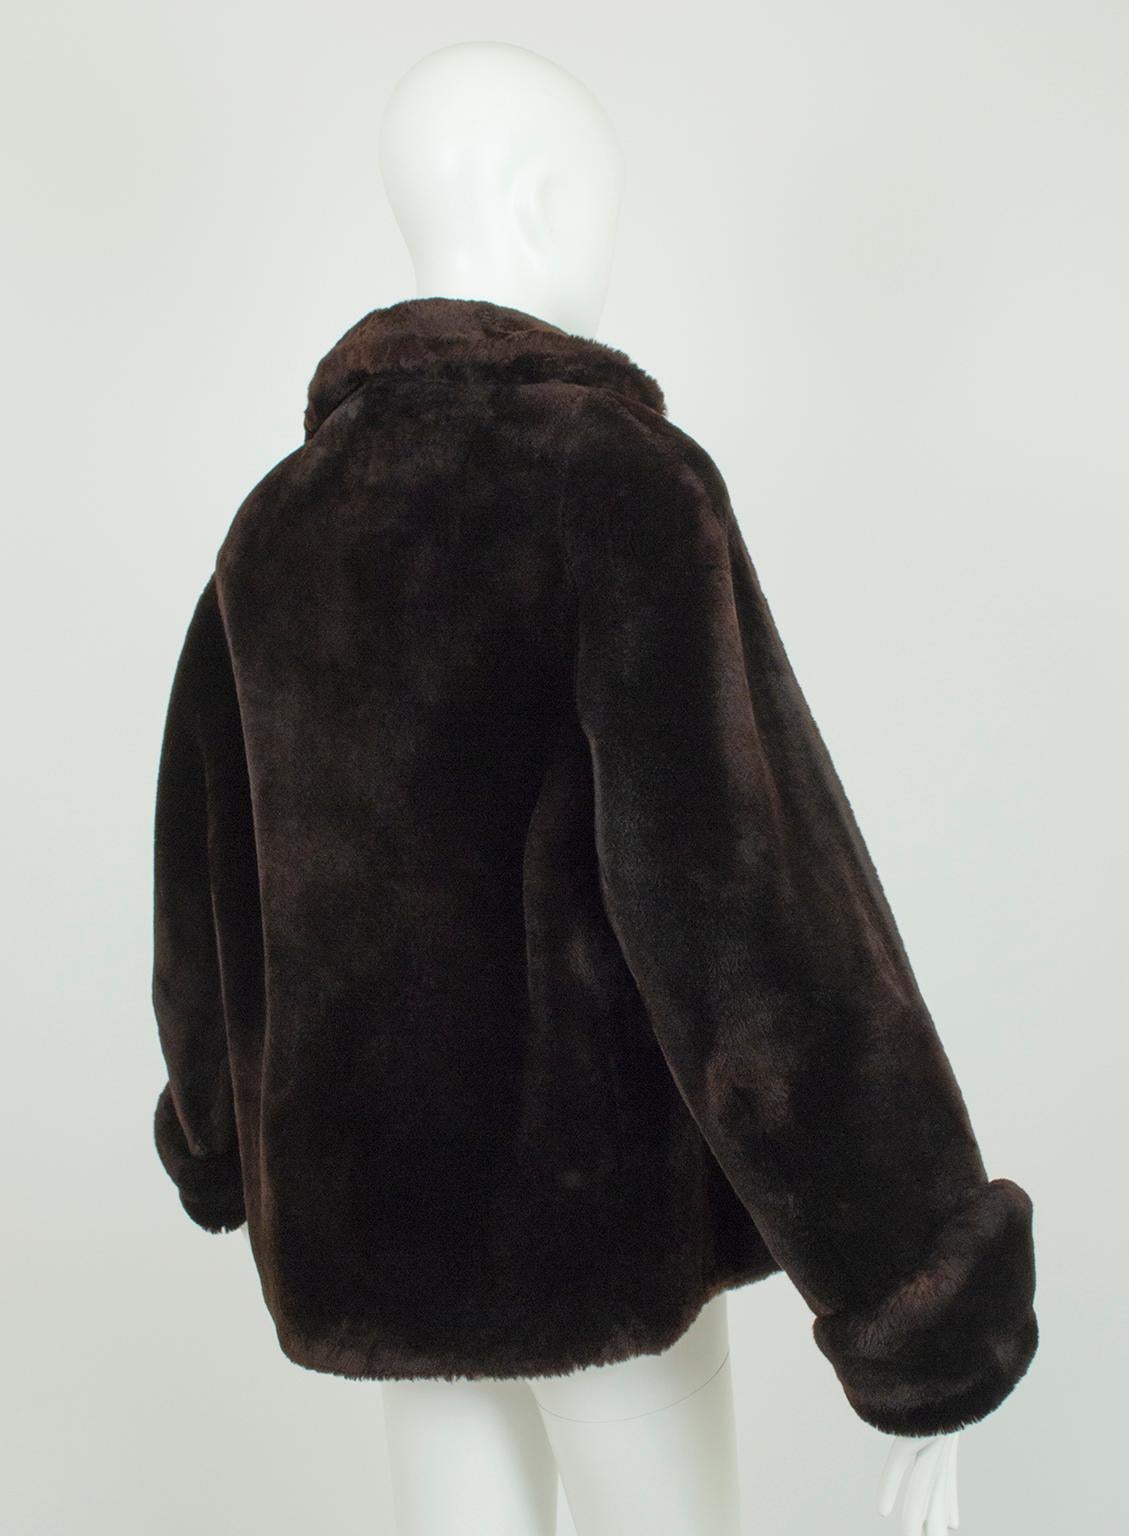 mouton fur coat 1950s